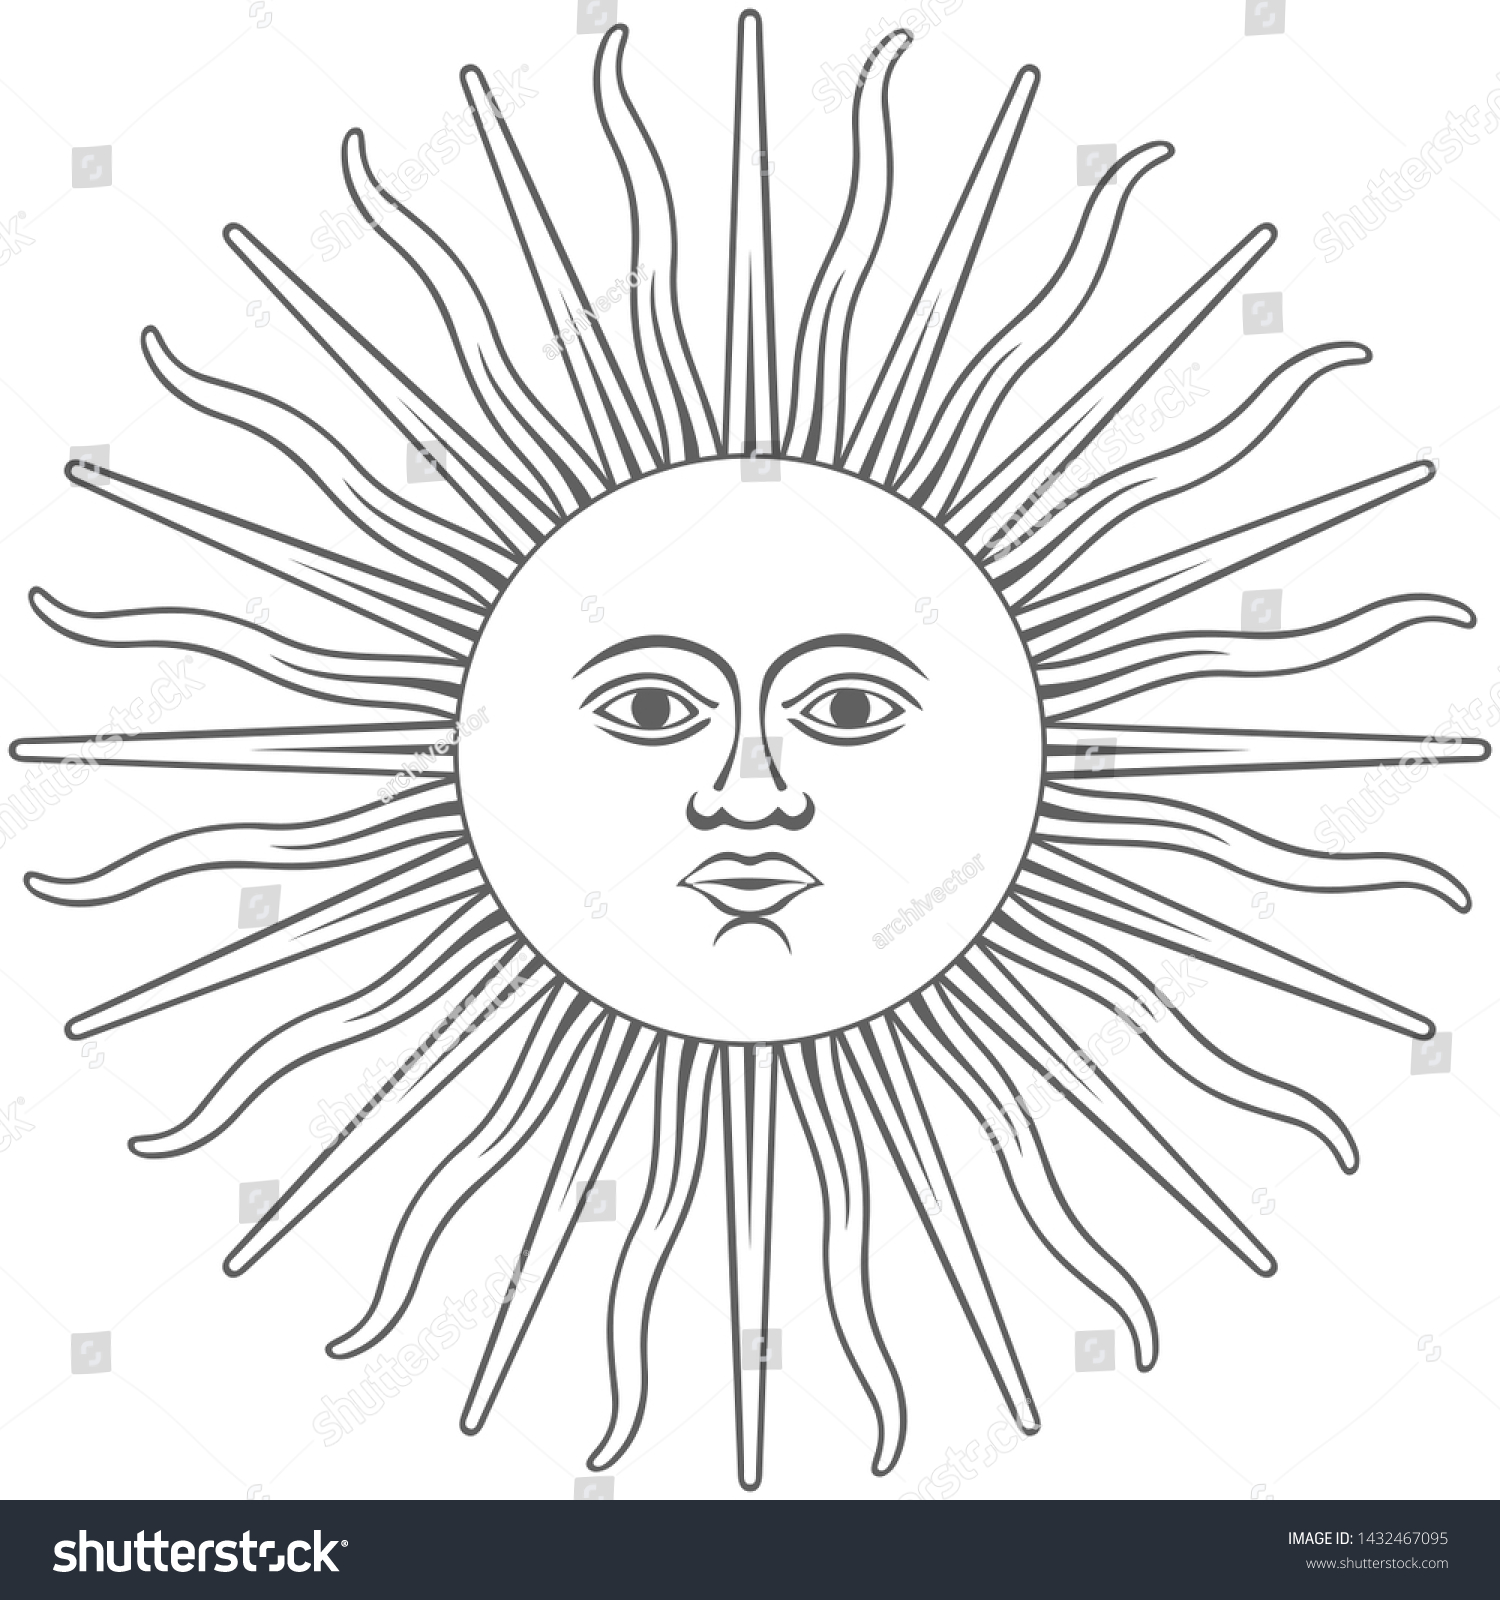 Sun god